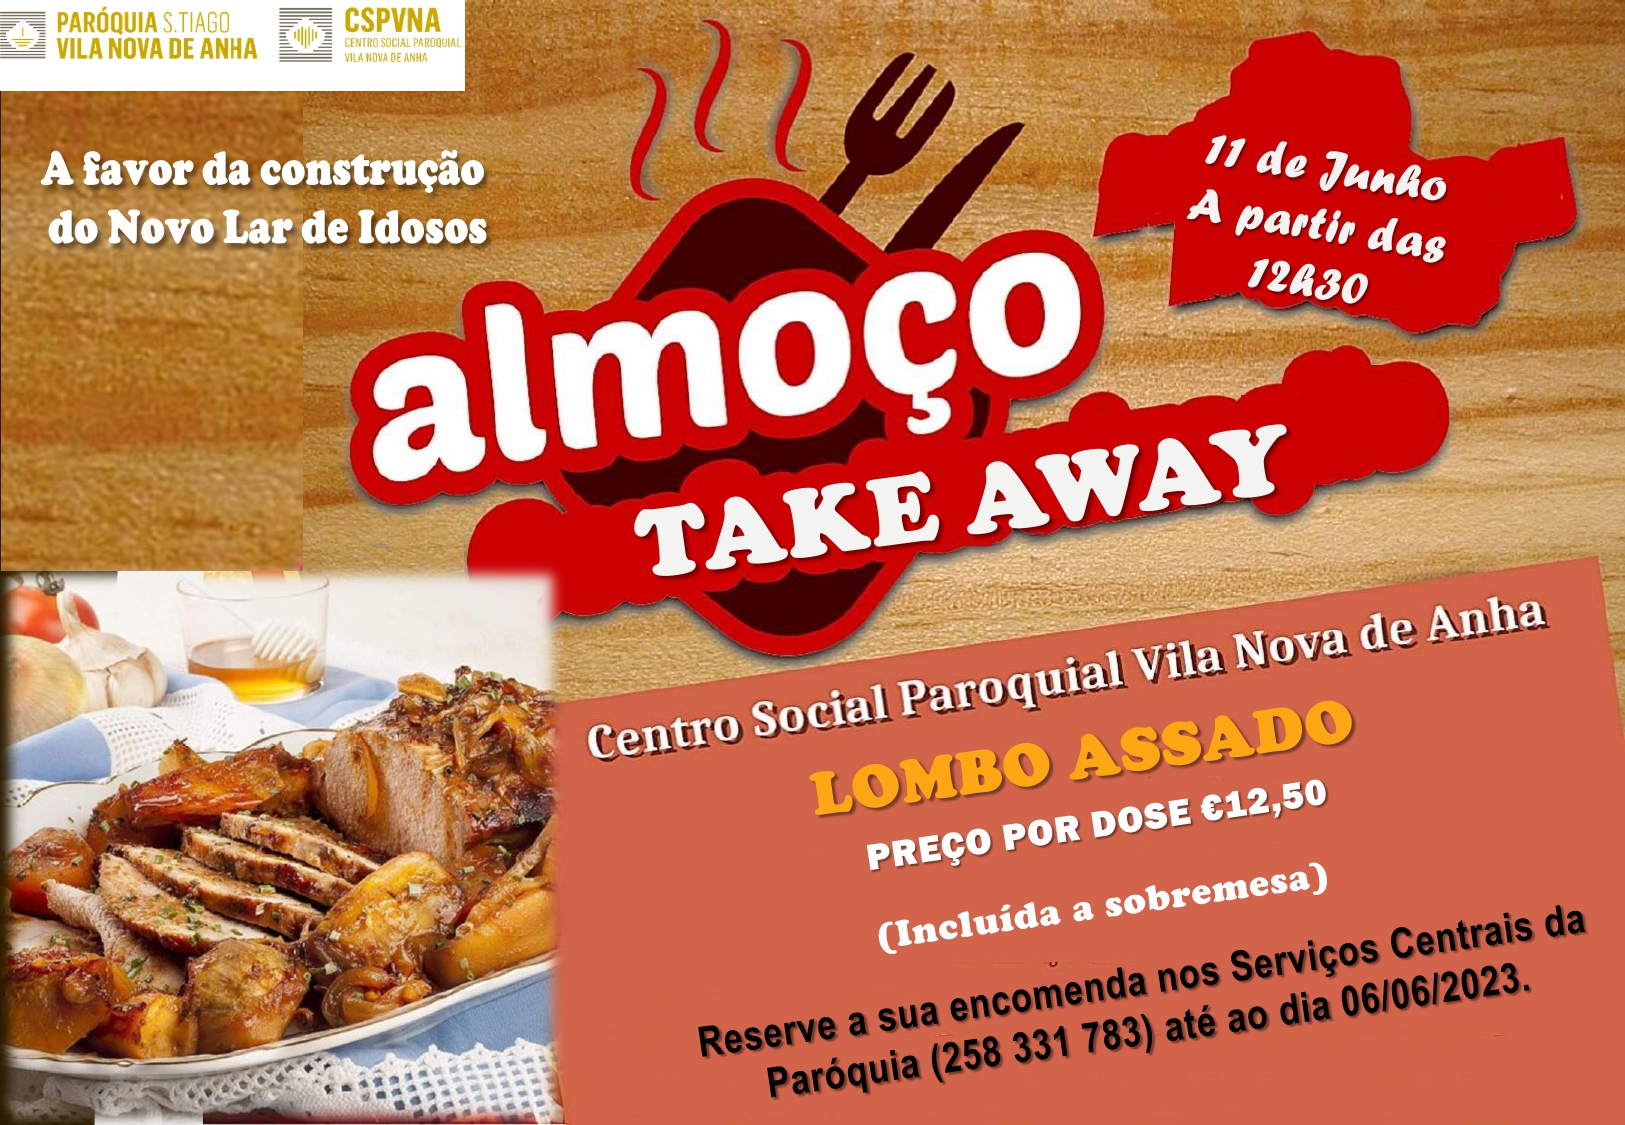 Almoço Take AWAY-11/06/2023